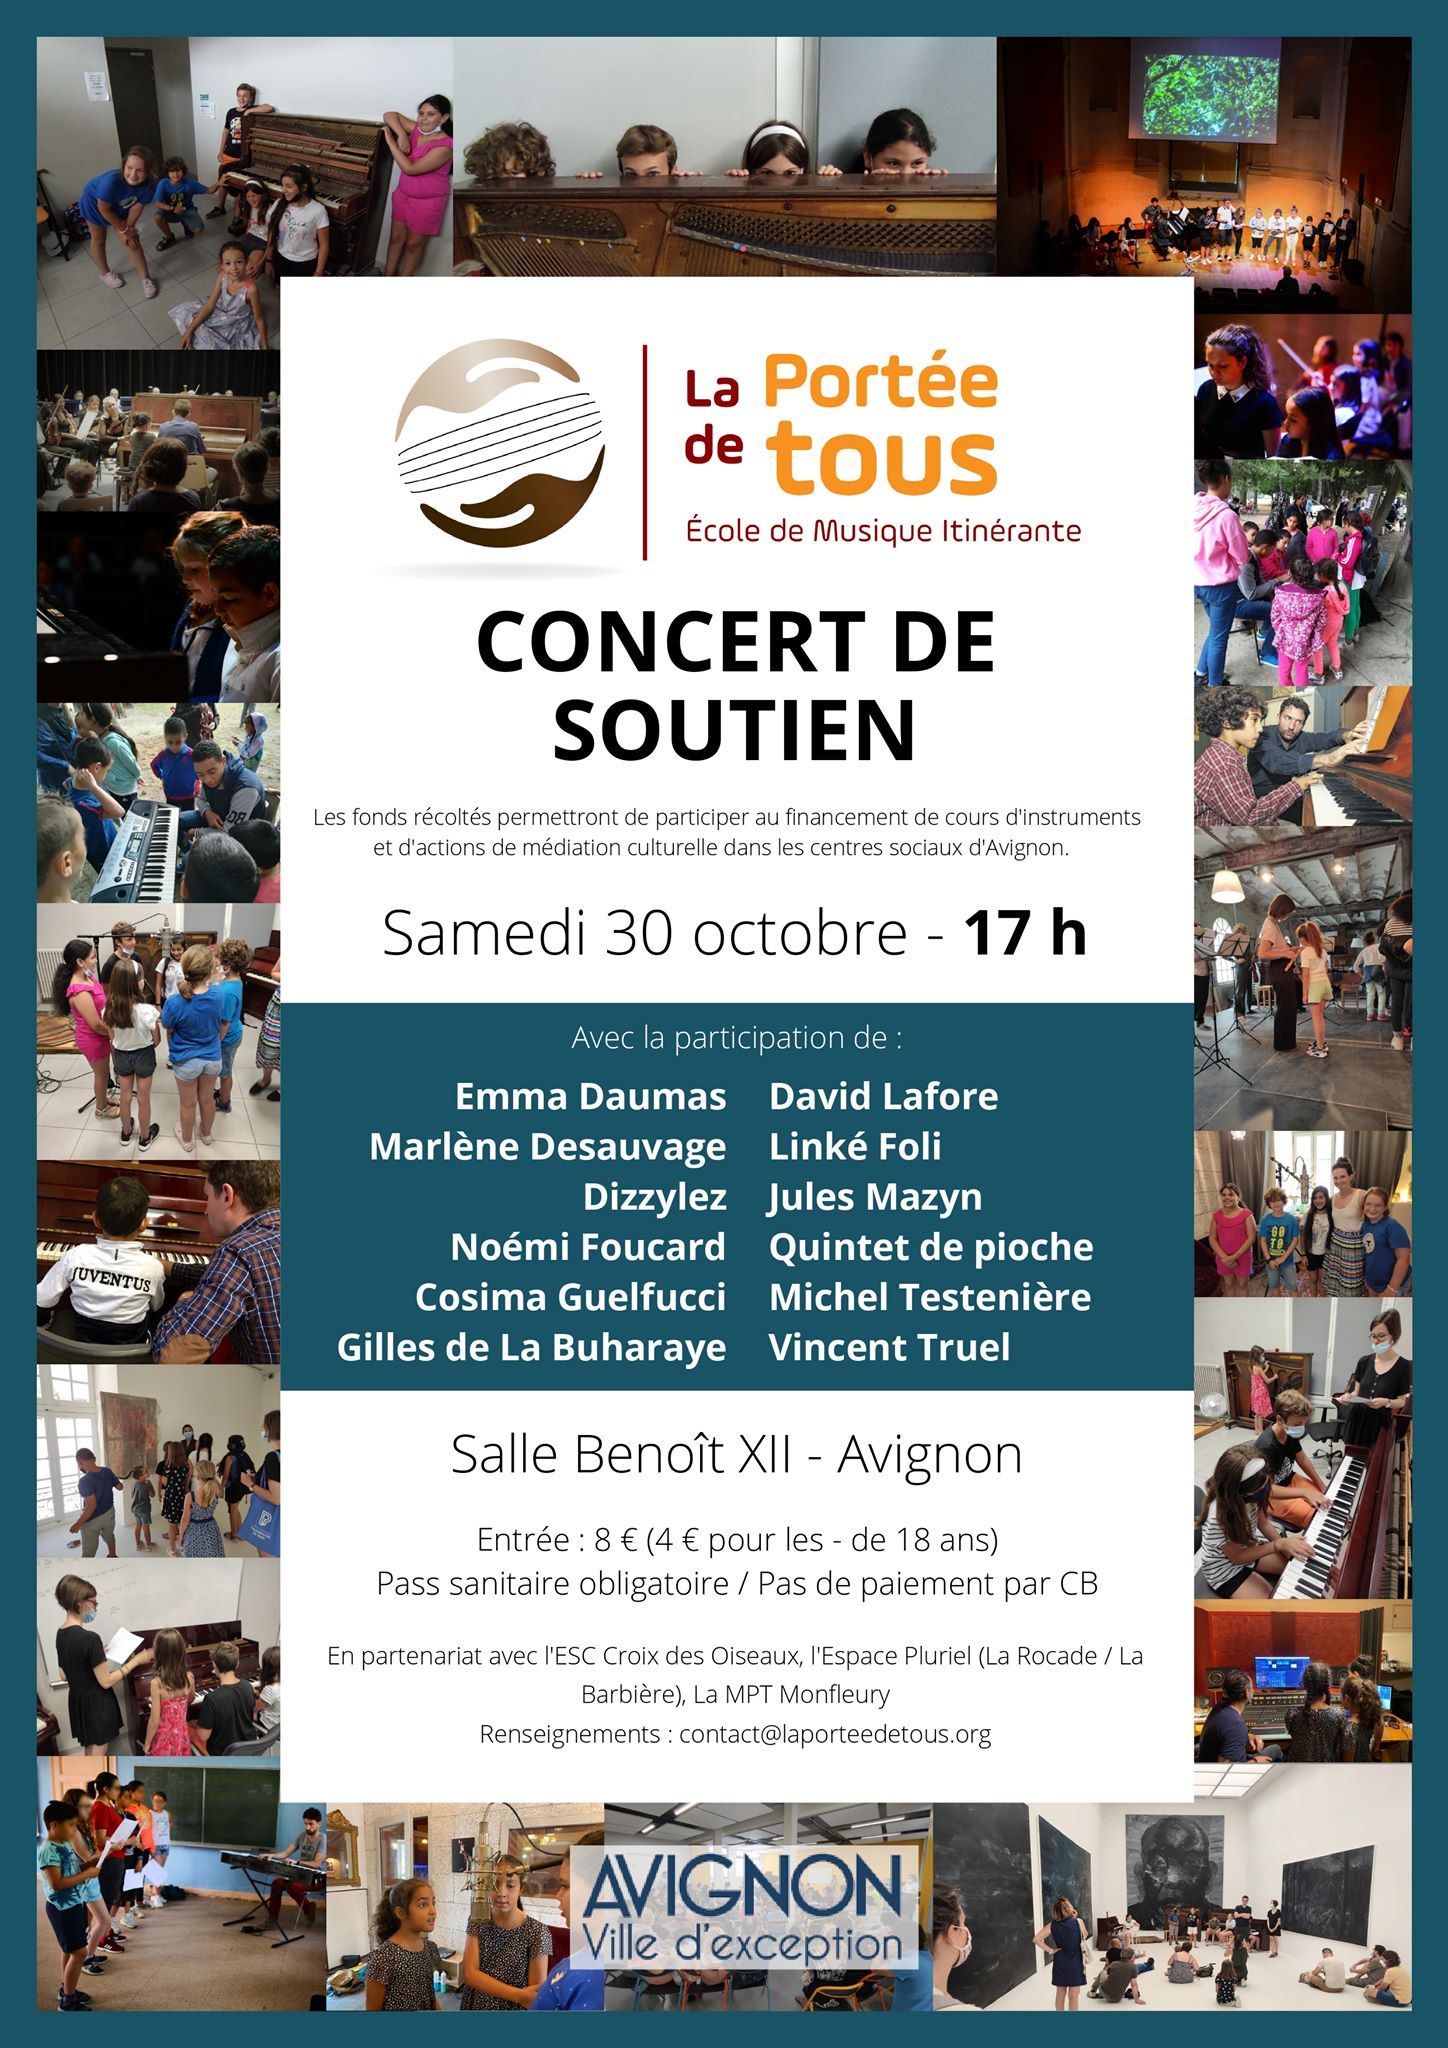 Le Théâtre Benoît XII accueille le concert de soutien à l’association La Portée de tous – le 30 octobre à 17h